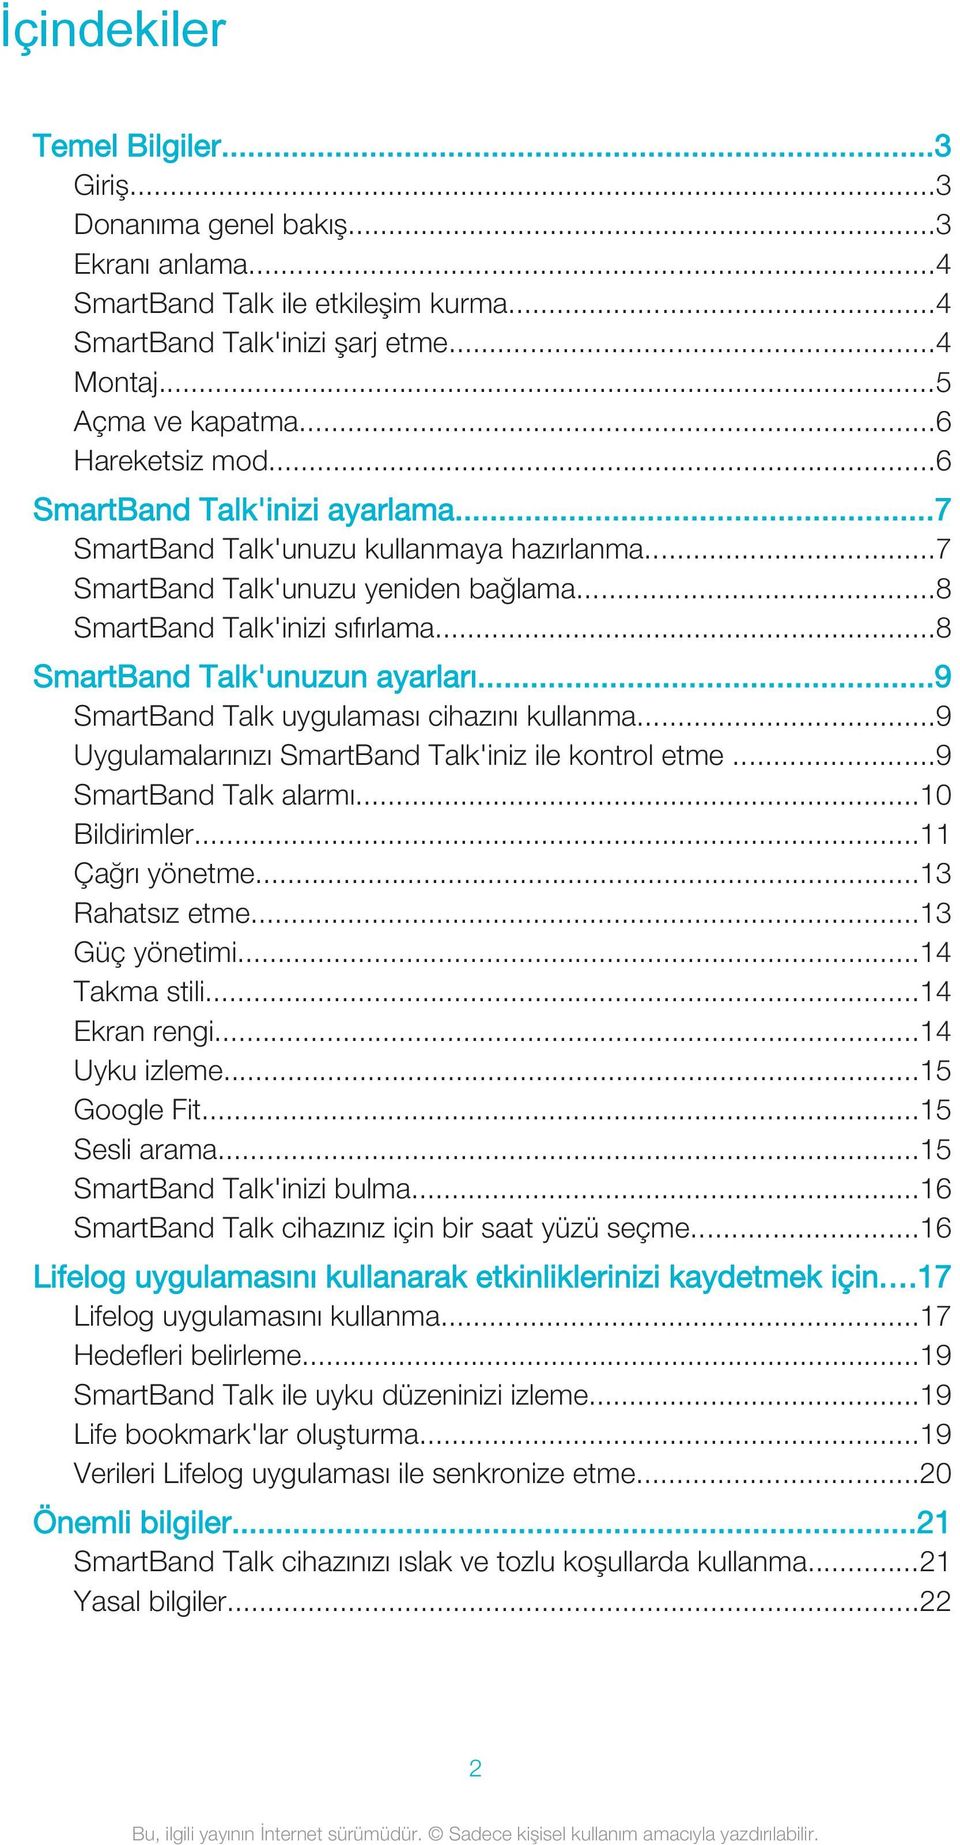 ..8 SmartBand Talk'unuzun ayarları...9 SmartBand Talk uygulaması cihazını kullanma...9 Uygulamalarınızı SmartBand Talk'iniz ile kontrol etme...9 SmartBand Talk alarmı...10 Bildirimler.